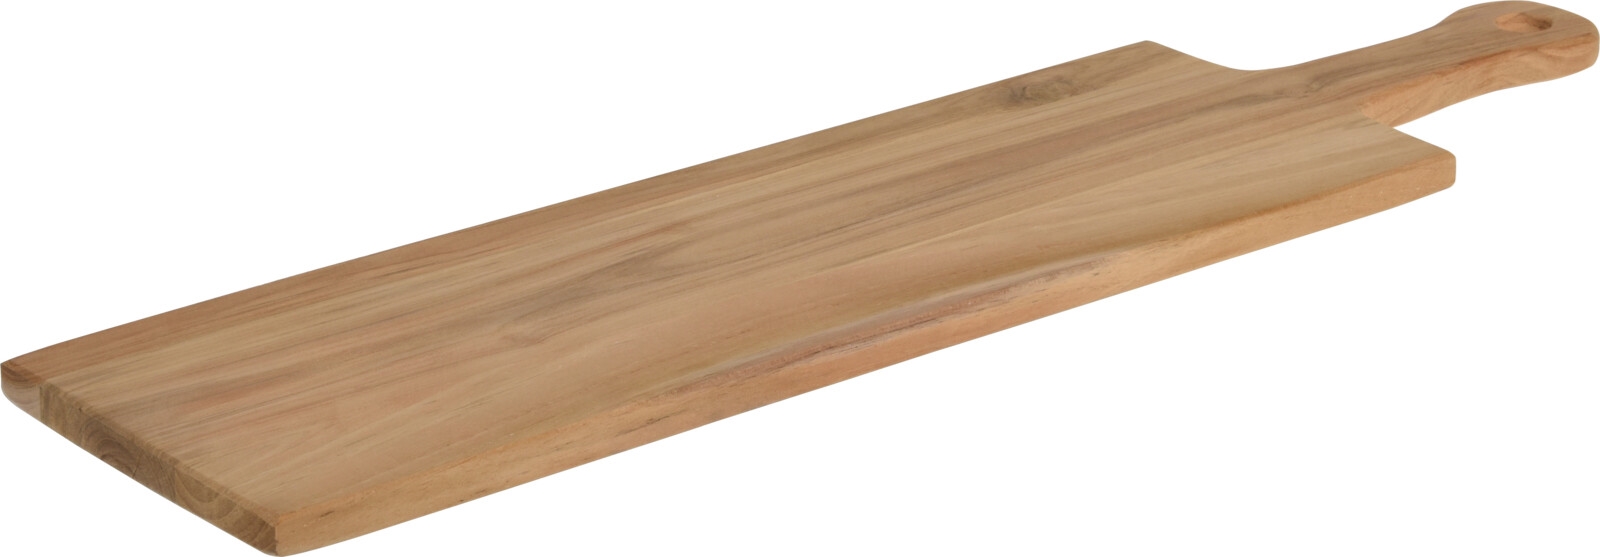 Picture of Teakhouten plank met handvat 60x15x1,5 cm